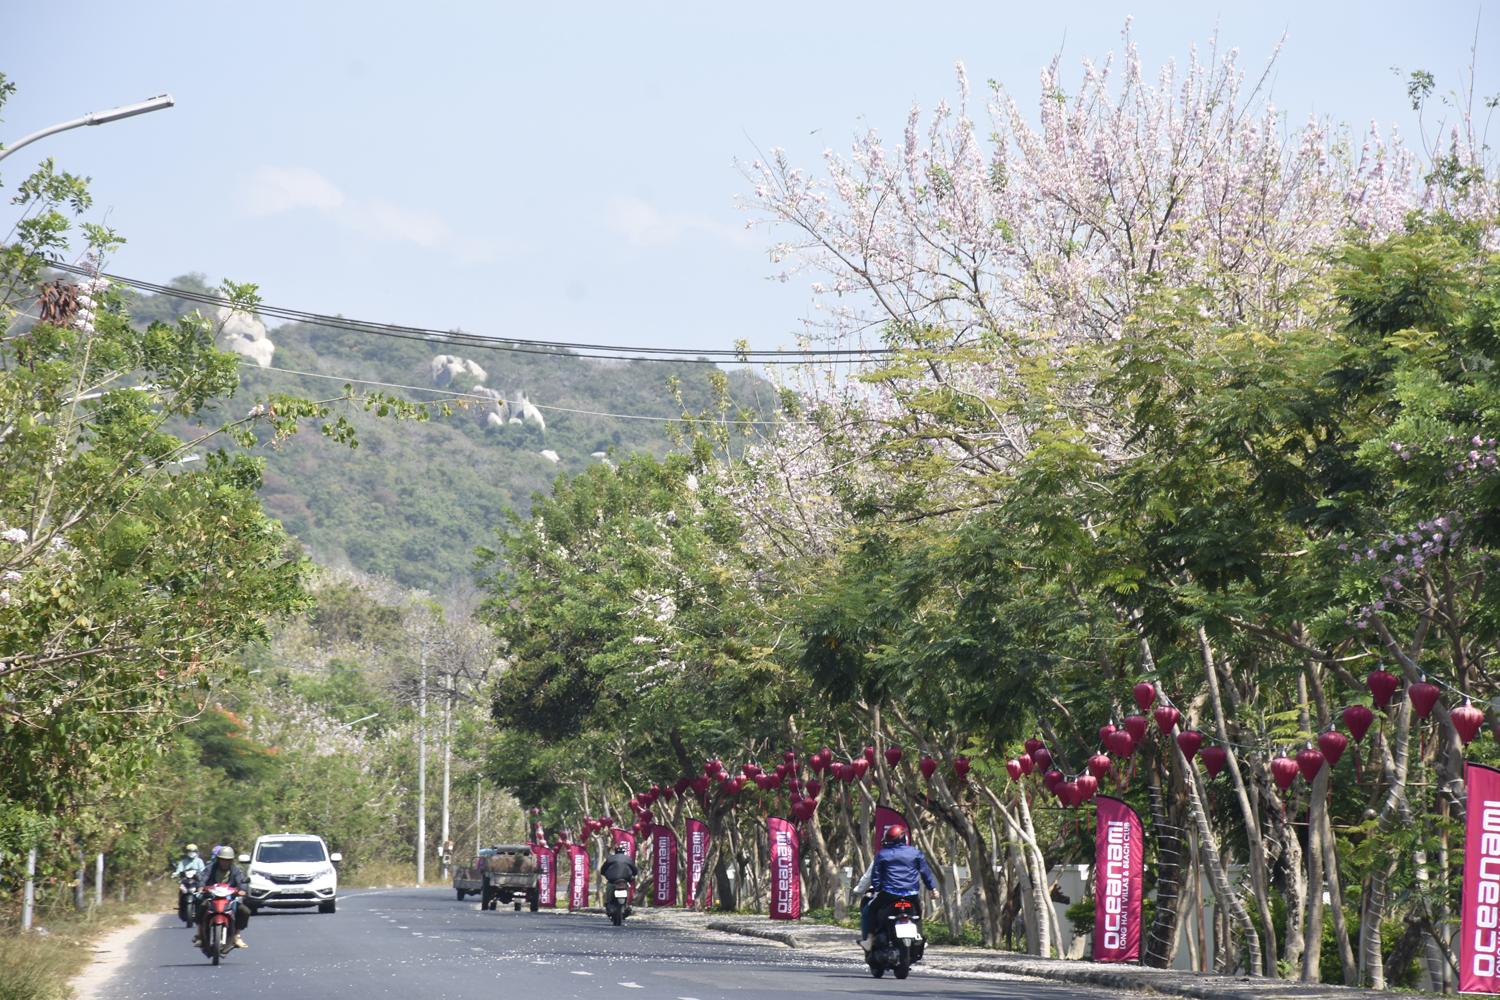 Khắp các con đường ở Vũng Tàu đều ngập tràn hoa mai anh đào